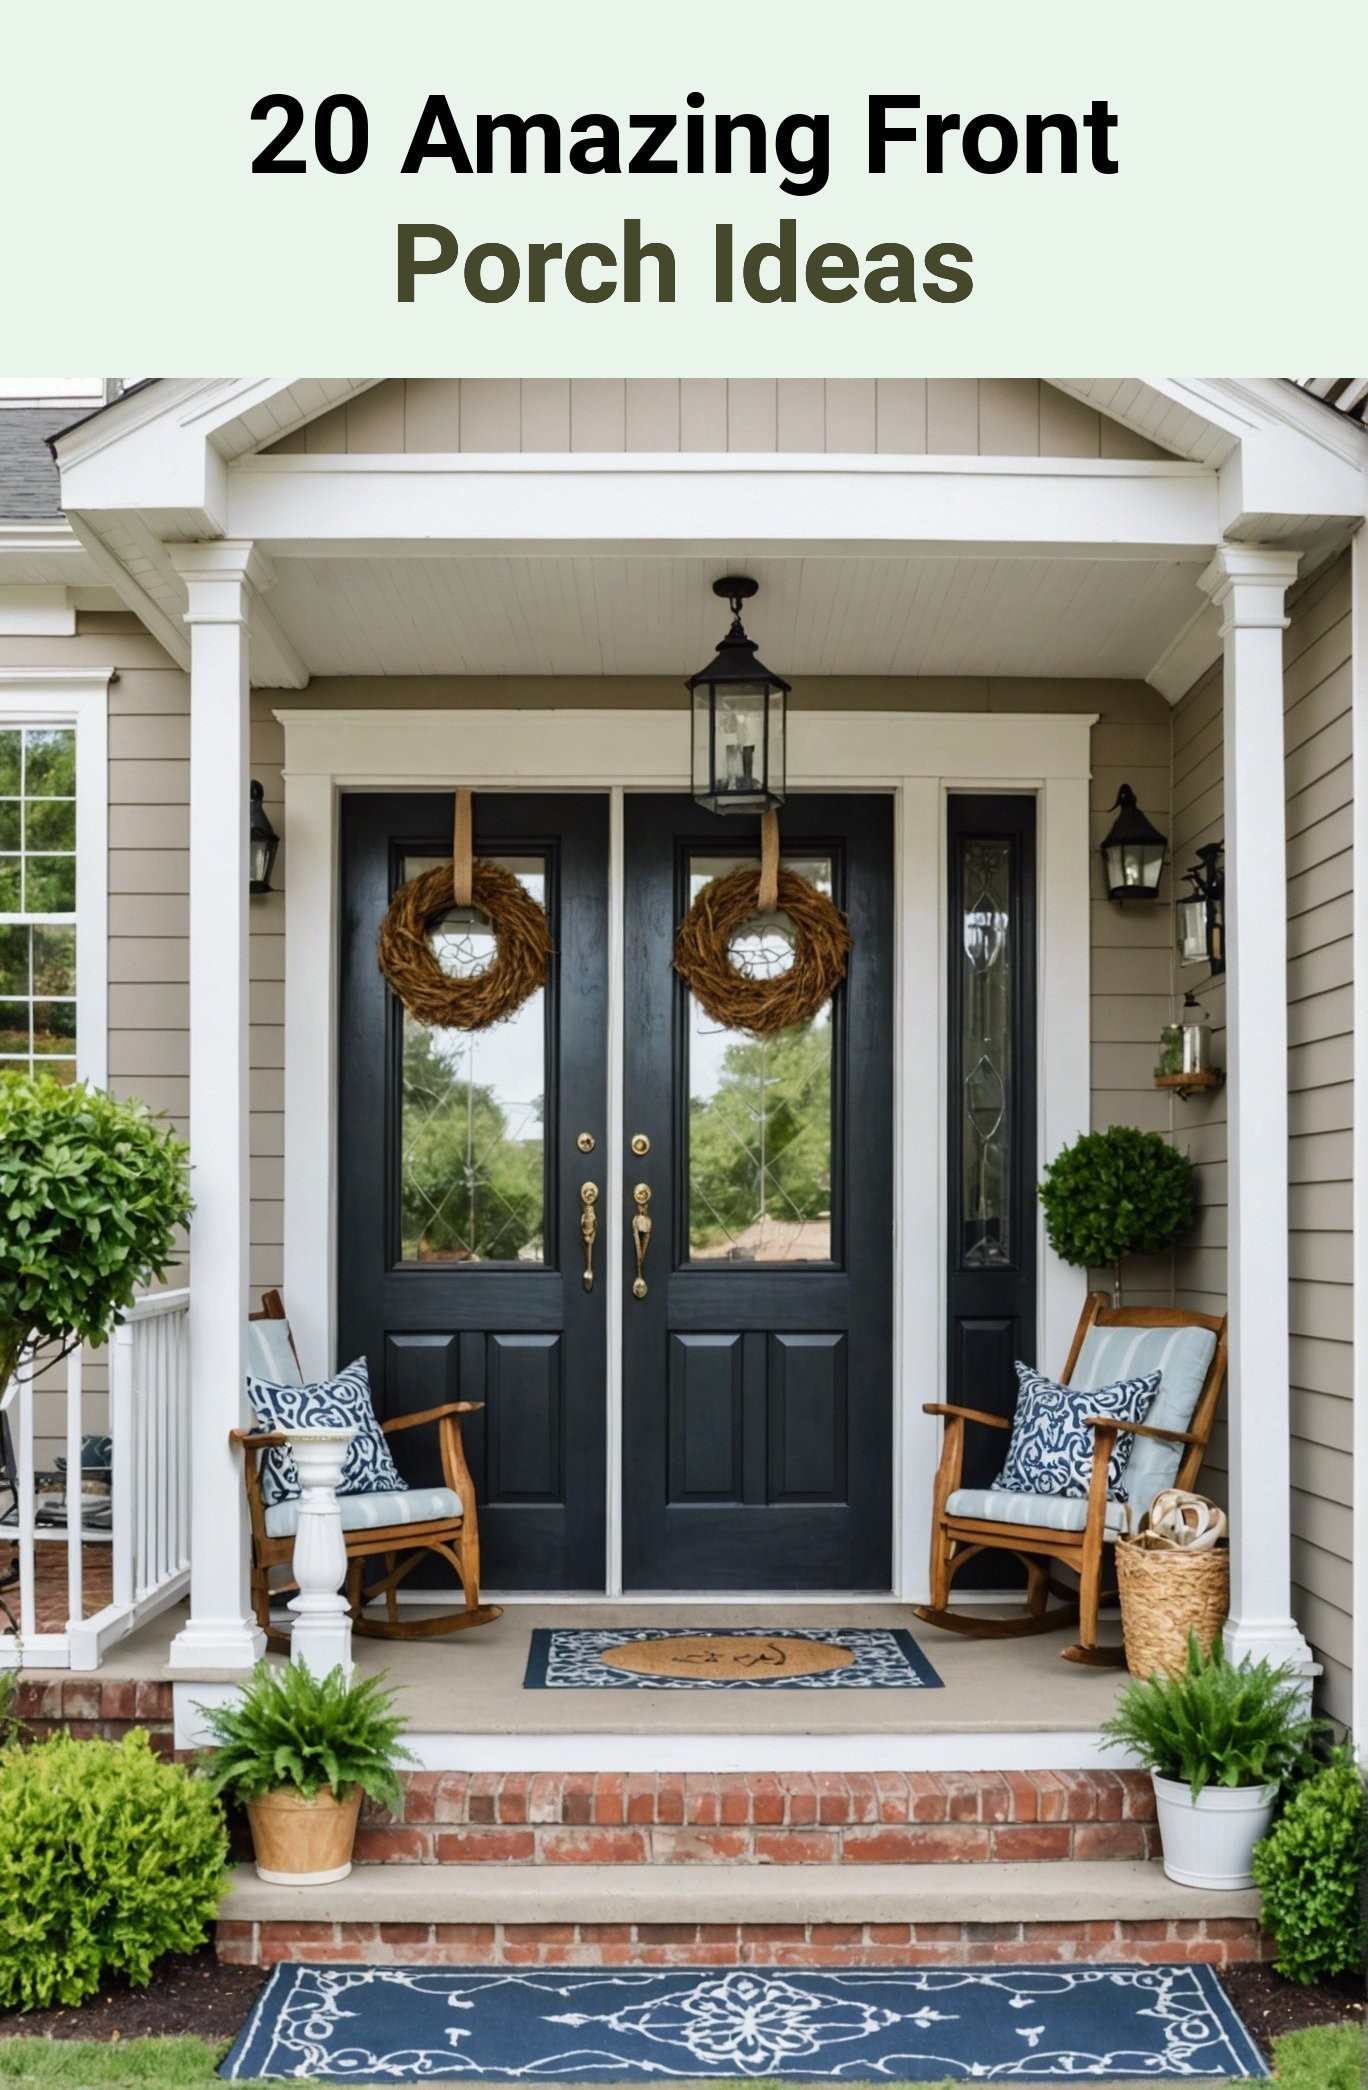 20 Amazing Front Porch Ideas